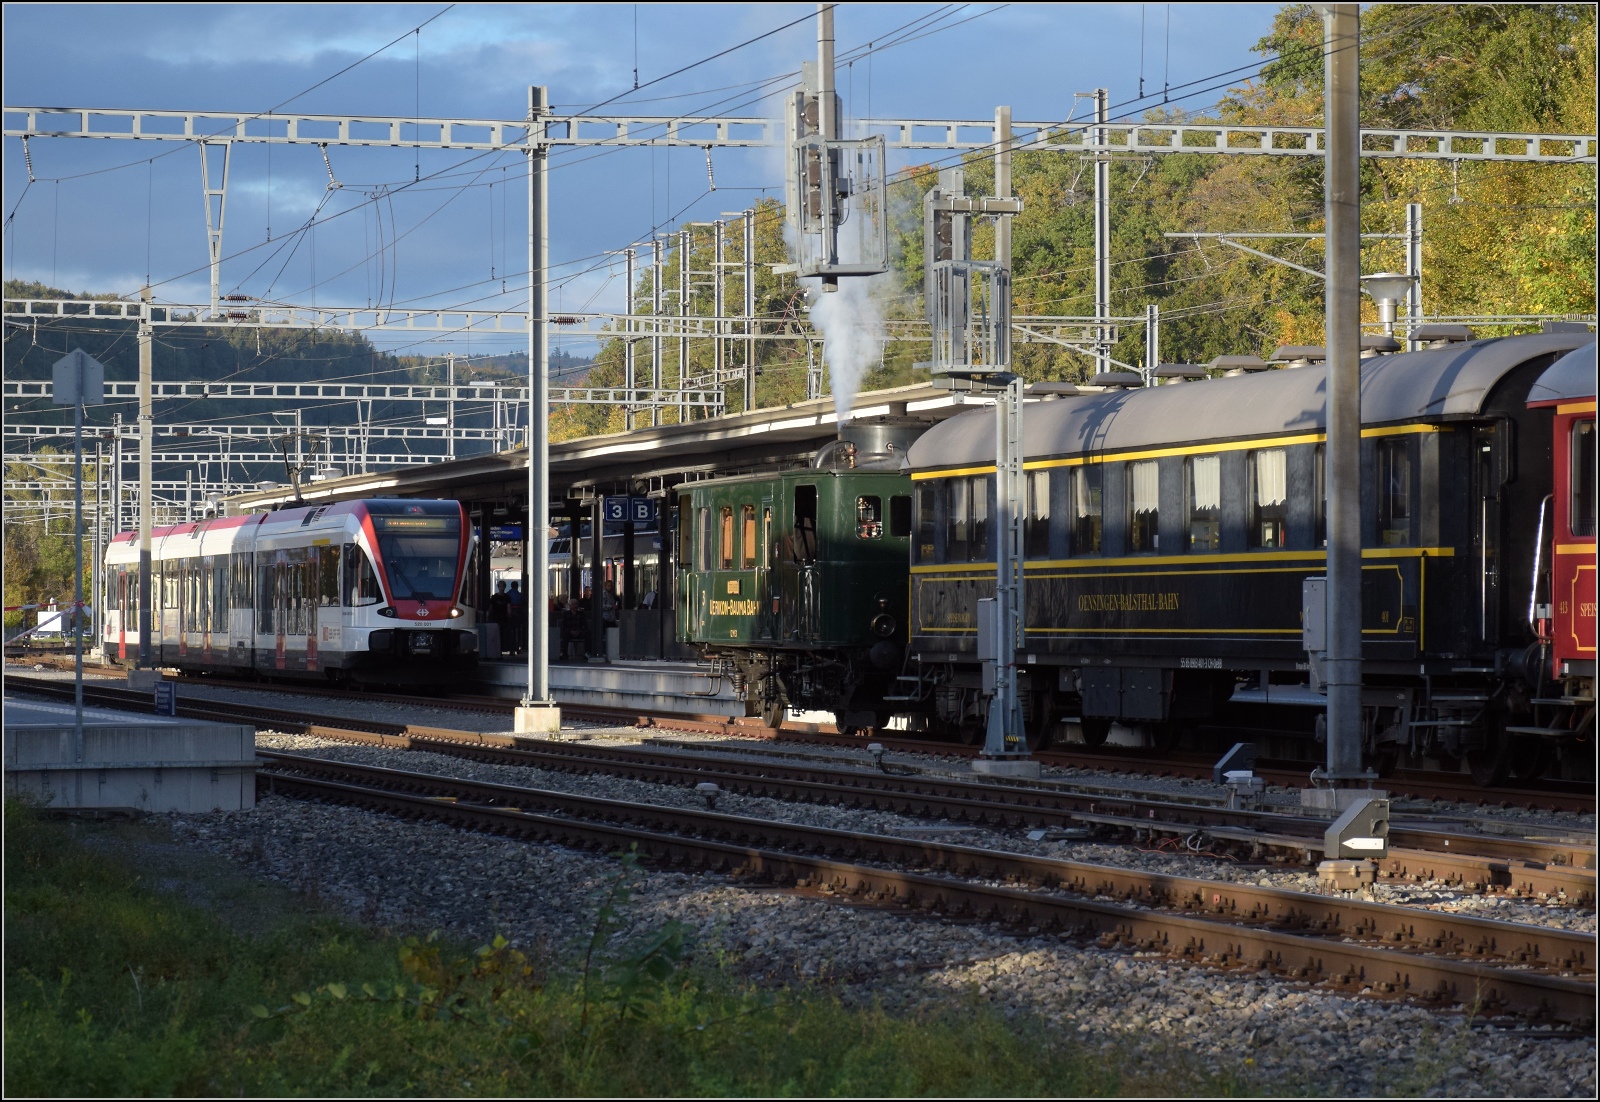 Den Schweizer Bahnen zum 175. Geburtstag.

Dampftage Koblenz, Normalverkehr gab es auch, hier GTW 2/8 RABe 520 001 vor dem UeBB-Kitteldampftriebwagen Czm 1/2 dem Speisewagen Wr 401 der OeBB. Oktober 2022.